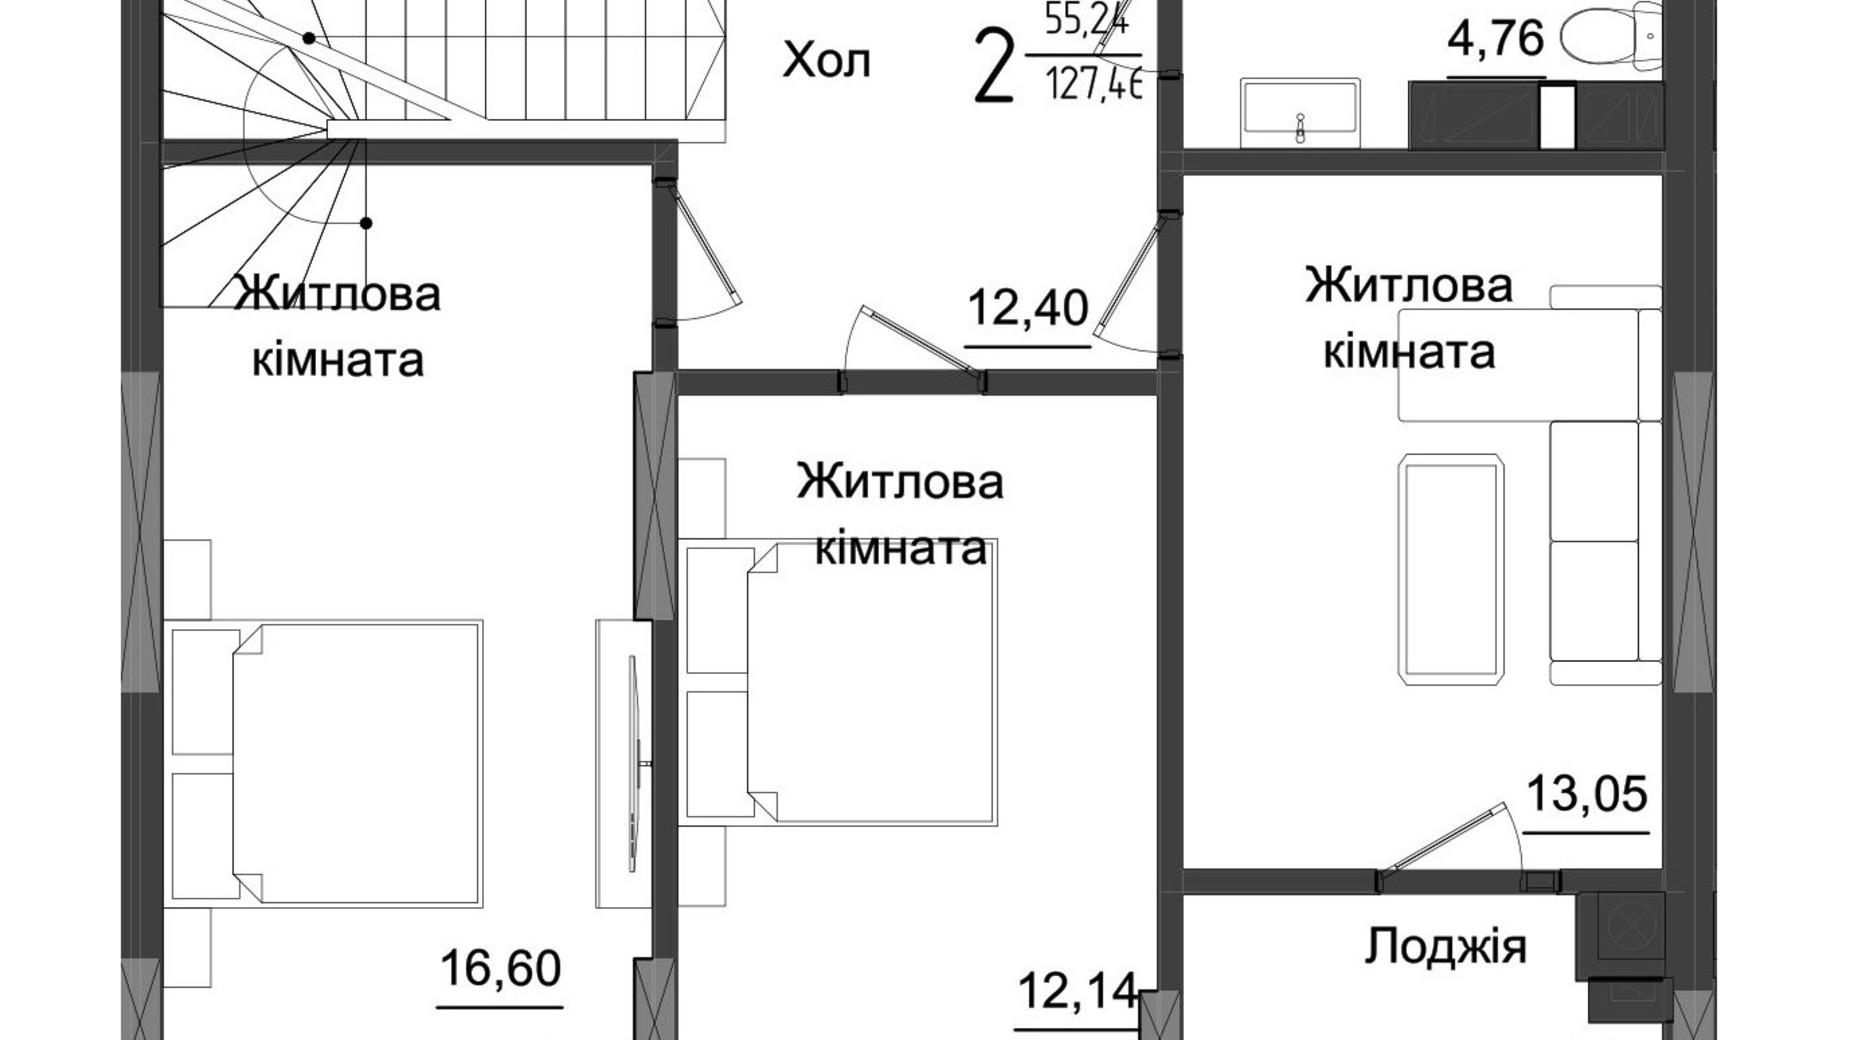 Планировка много­уровневой квартиры в ЖК Аметист 128.66 м², фото 558536